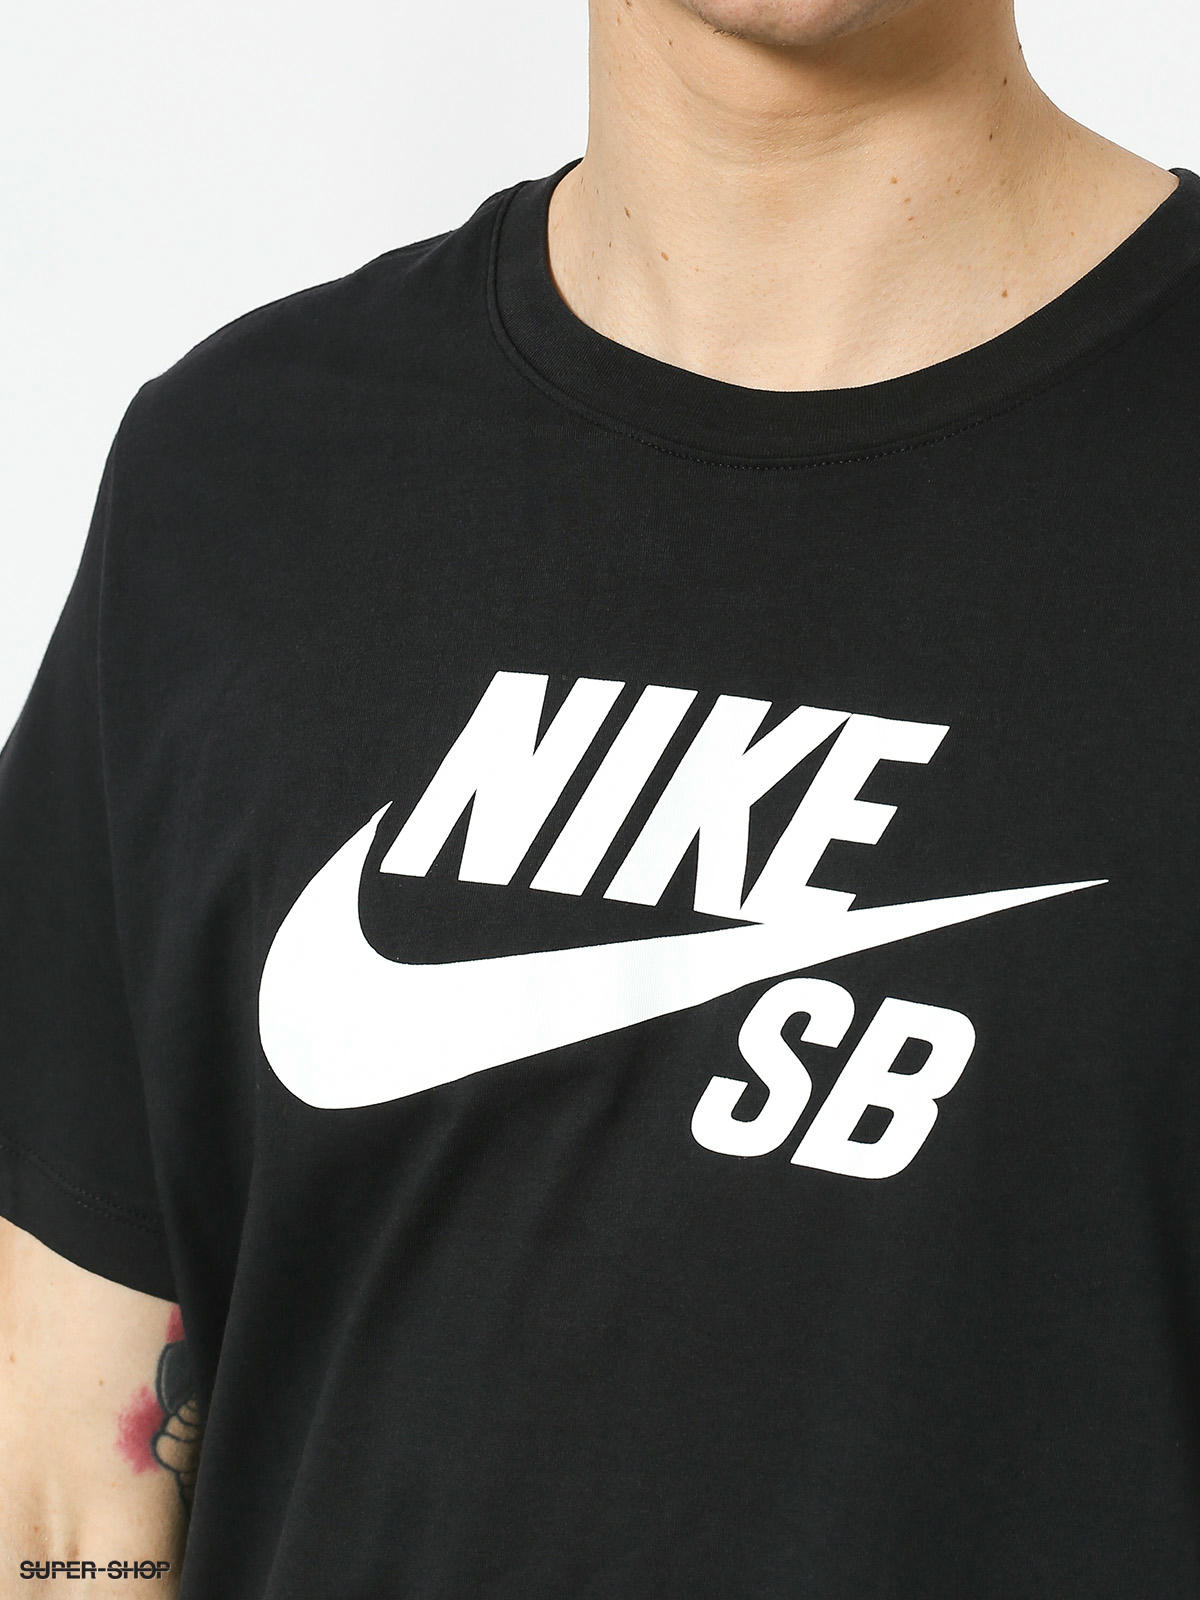 Nike SB Sb Dri Fit T-shirt (black/white)